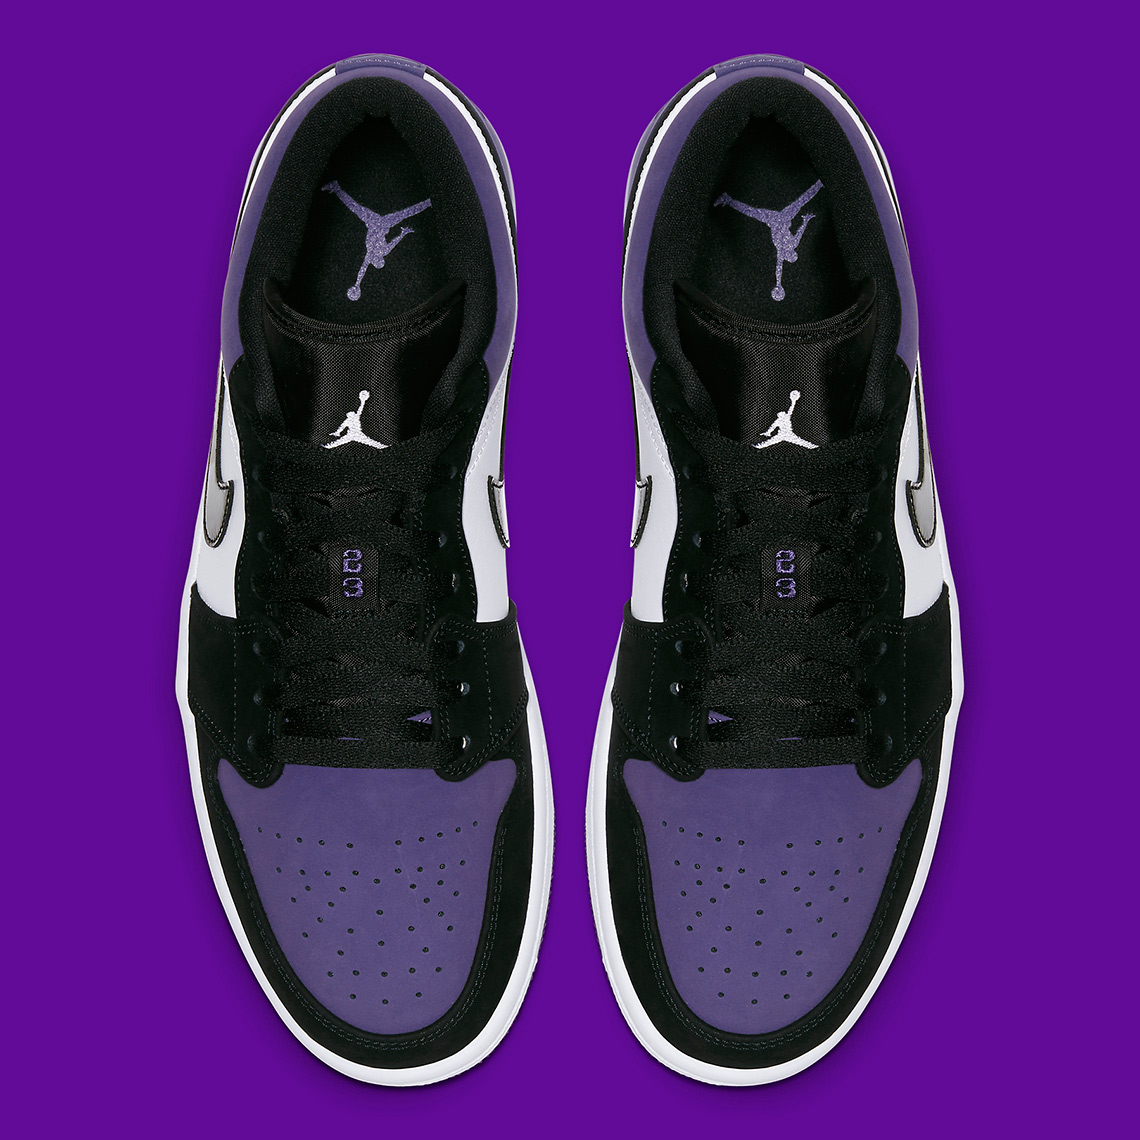 Jordan 1 Low Court Purple 553558 125 Release Info SneakerNews com